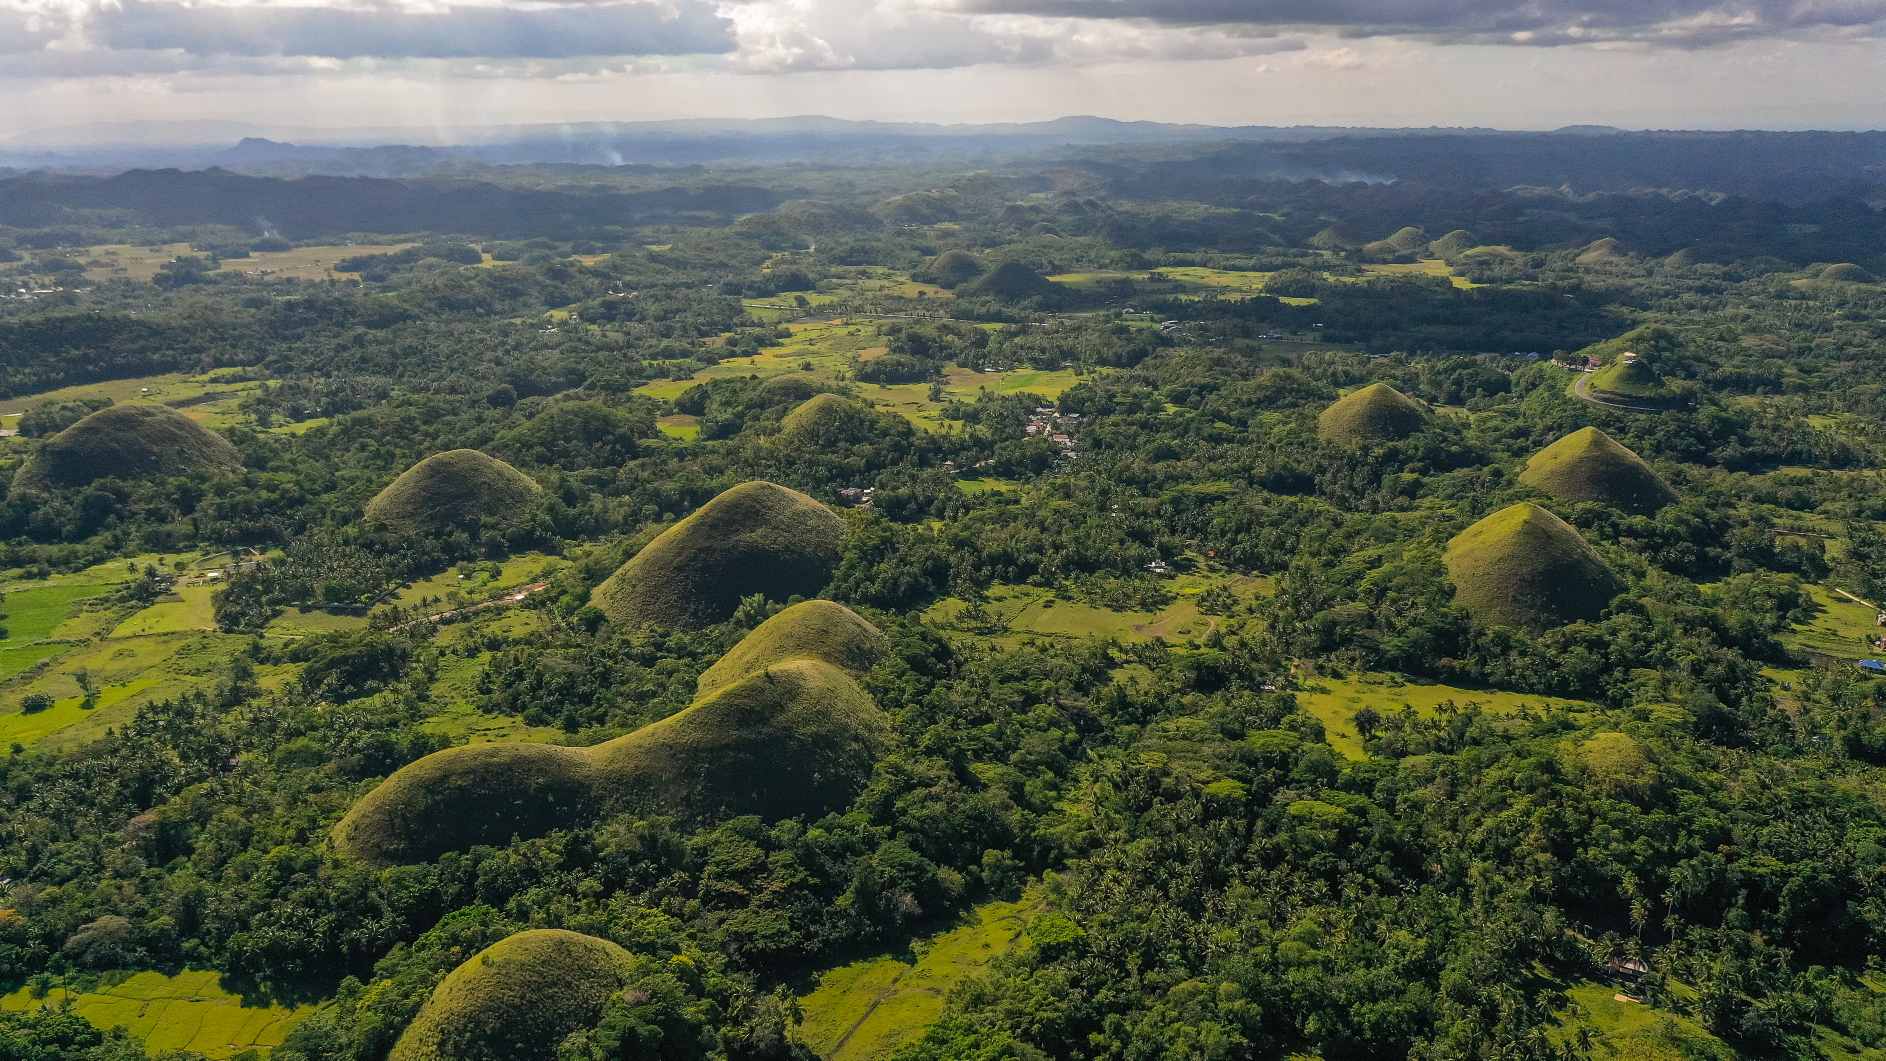 Colinas entre tierras de cultivo. Hito natural de Chocolate Hills, isla de Bohol, Filipinas. © Crédito de la imagen: Alexey Kornylyev | Licencia de DreamsTime, ID: 223476330